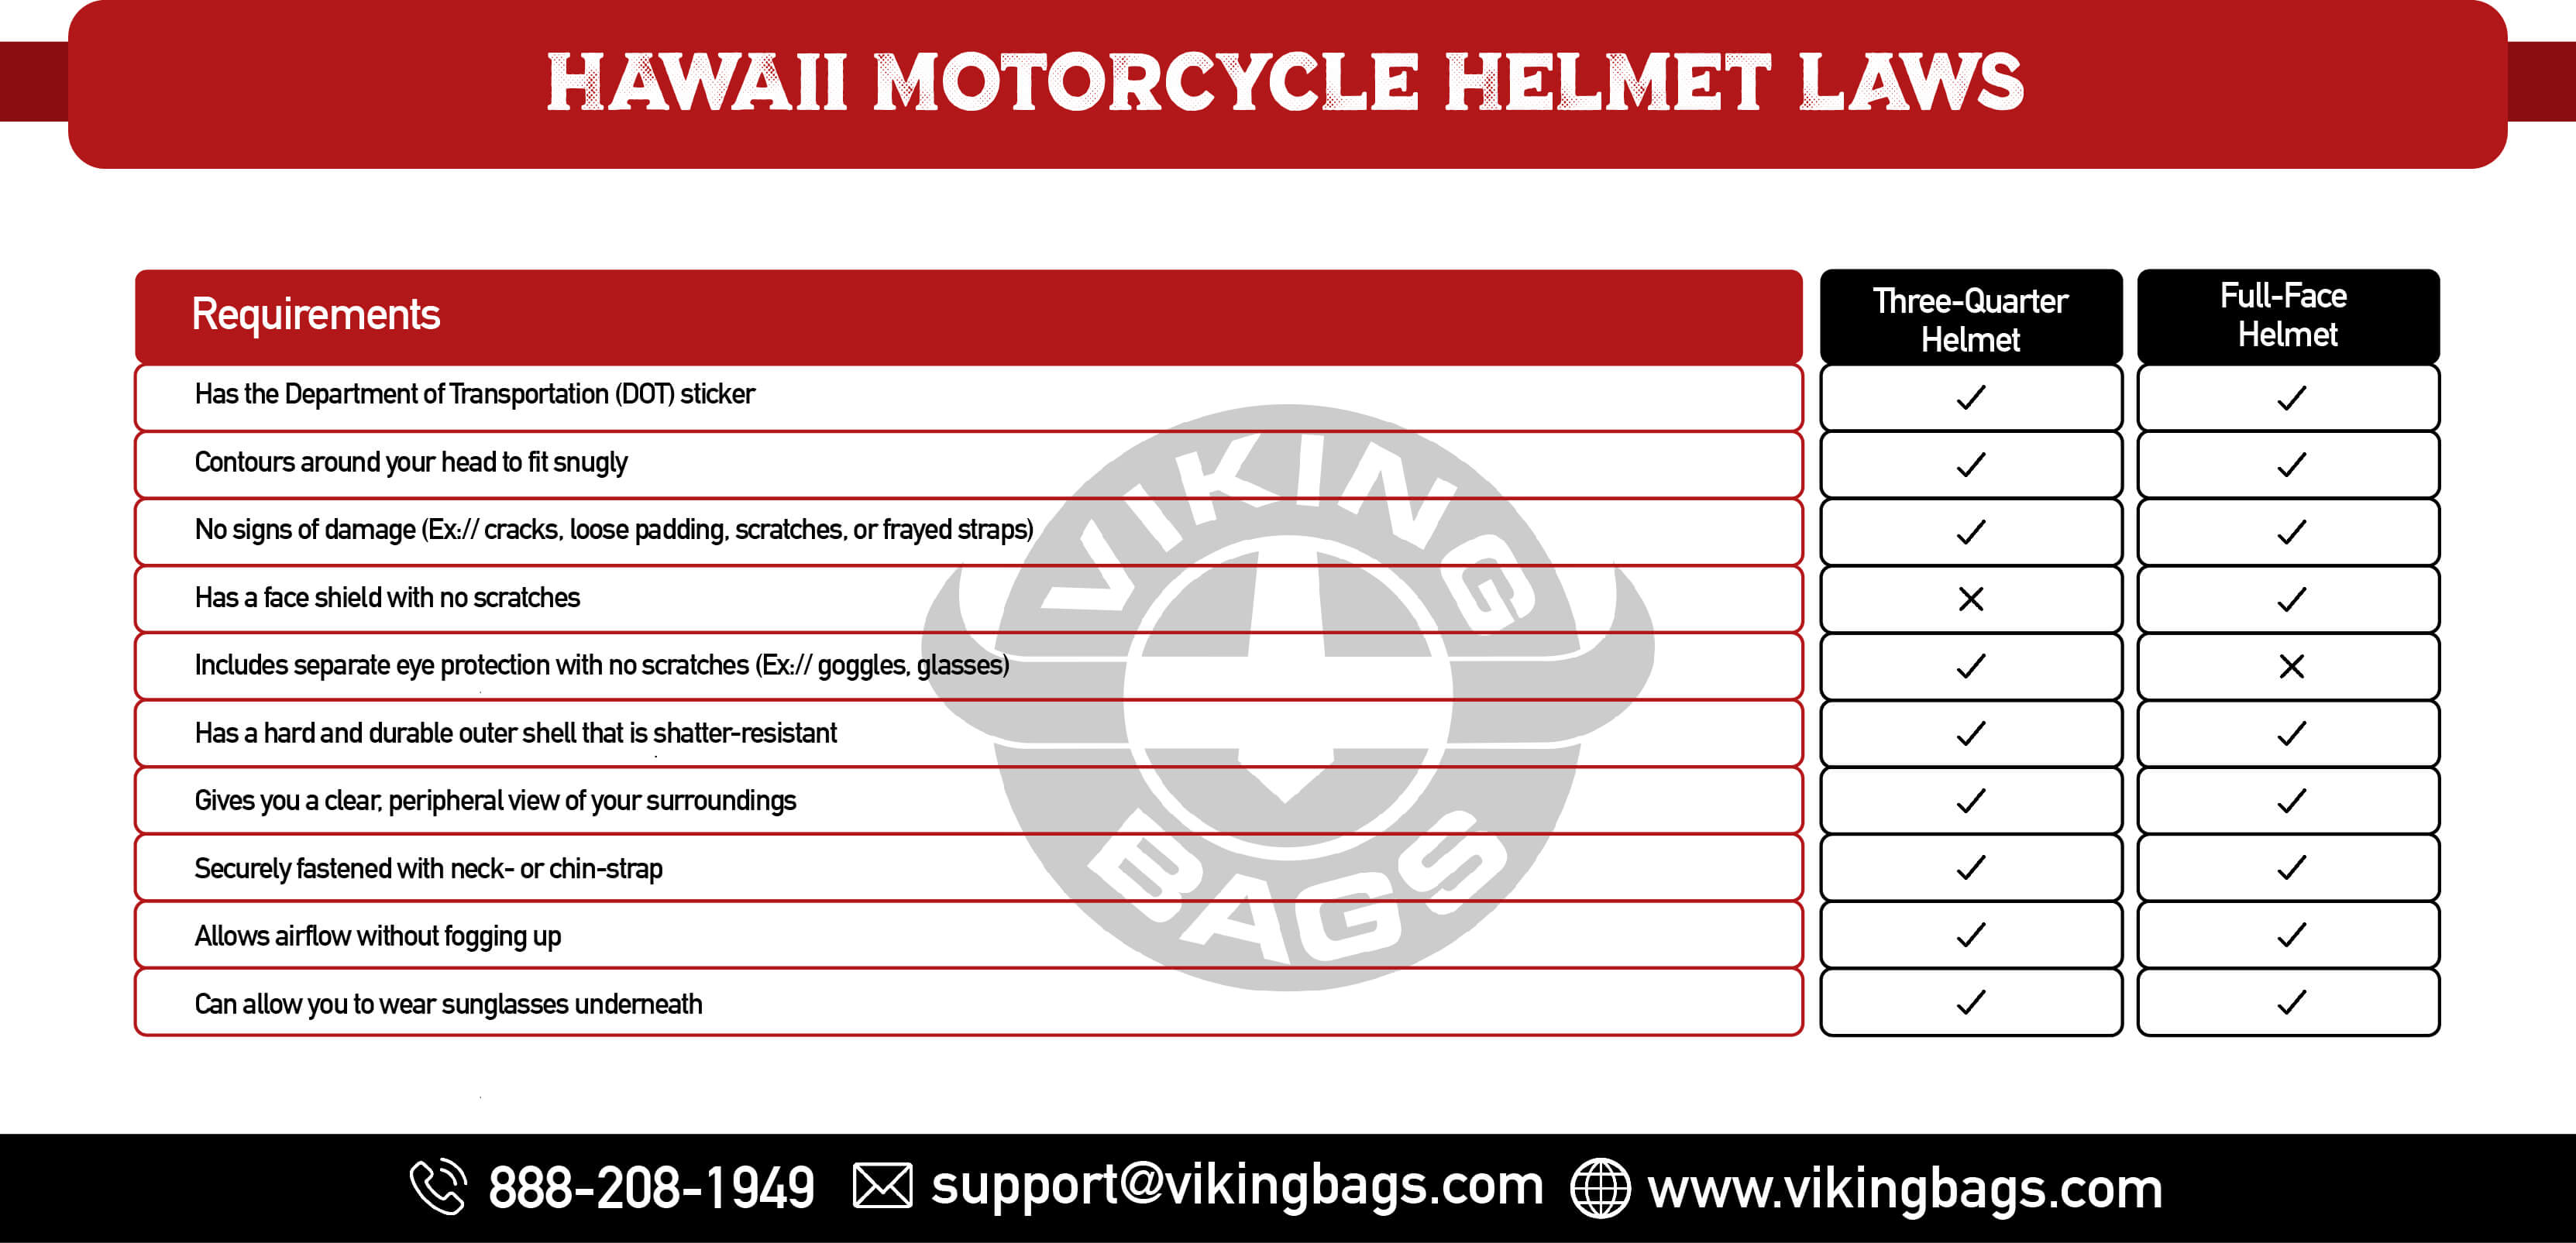 Hawaii Motorcycle Helmet Laws